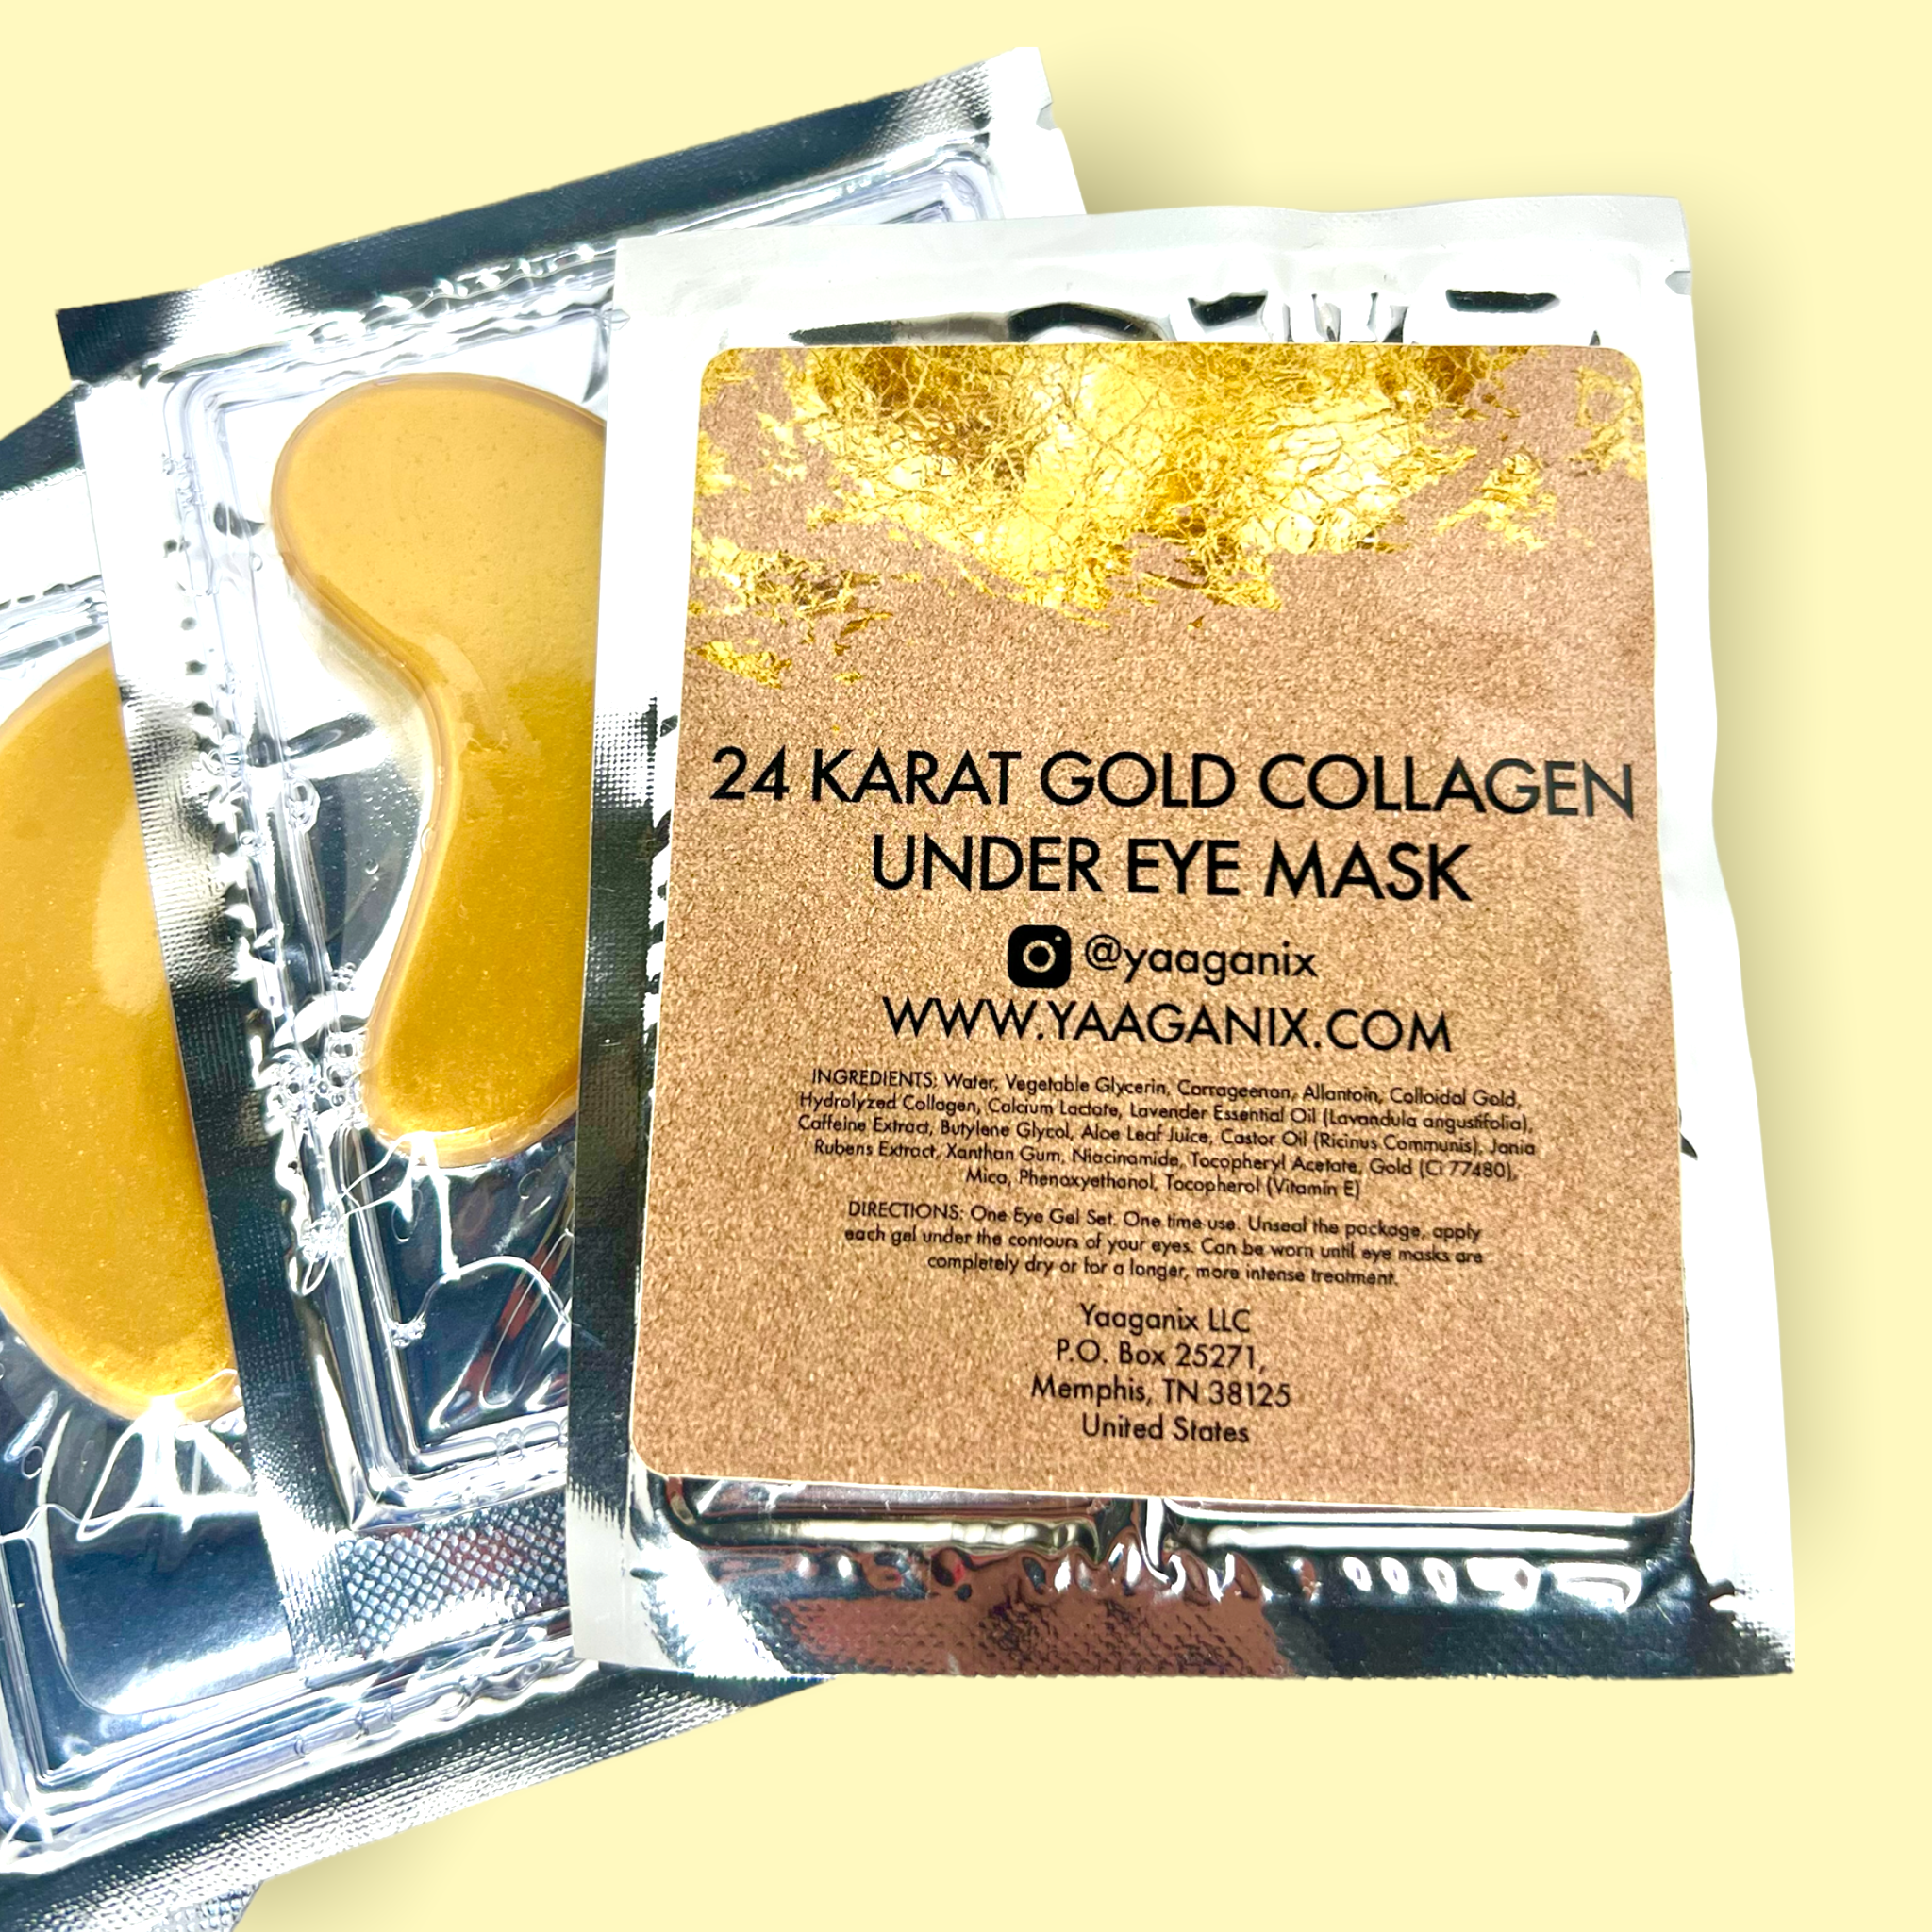 24 Karat Gold Collagen Under Eye Mask